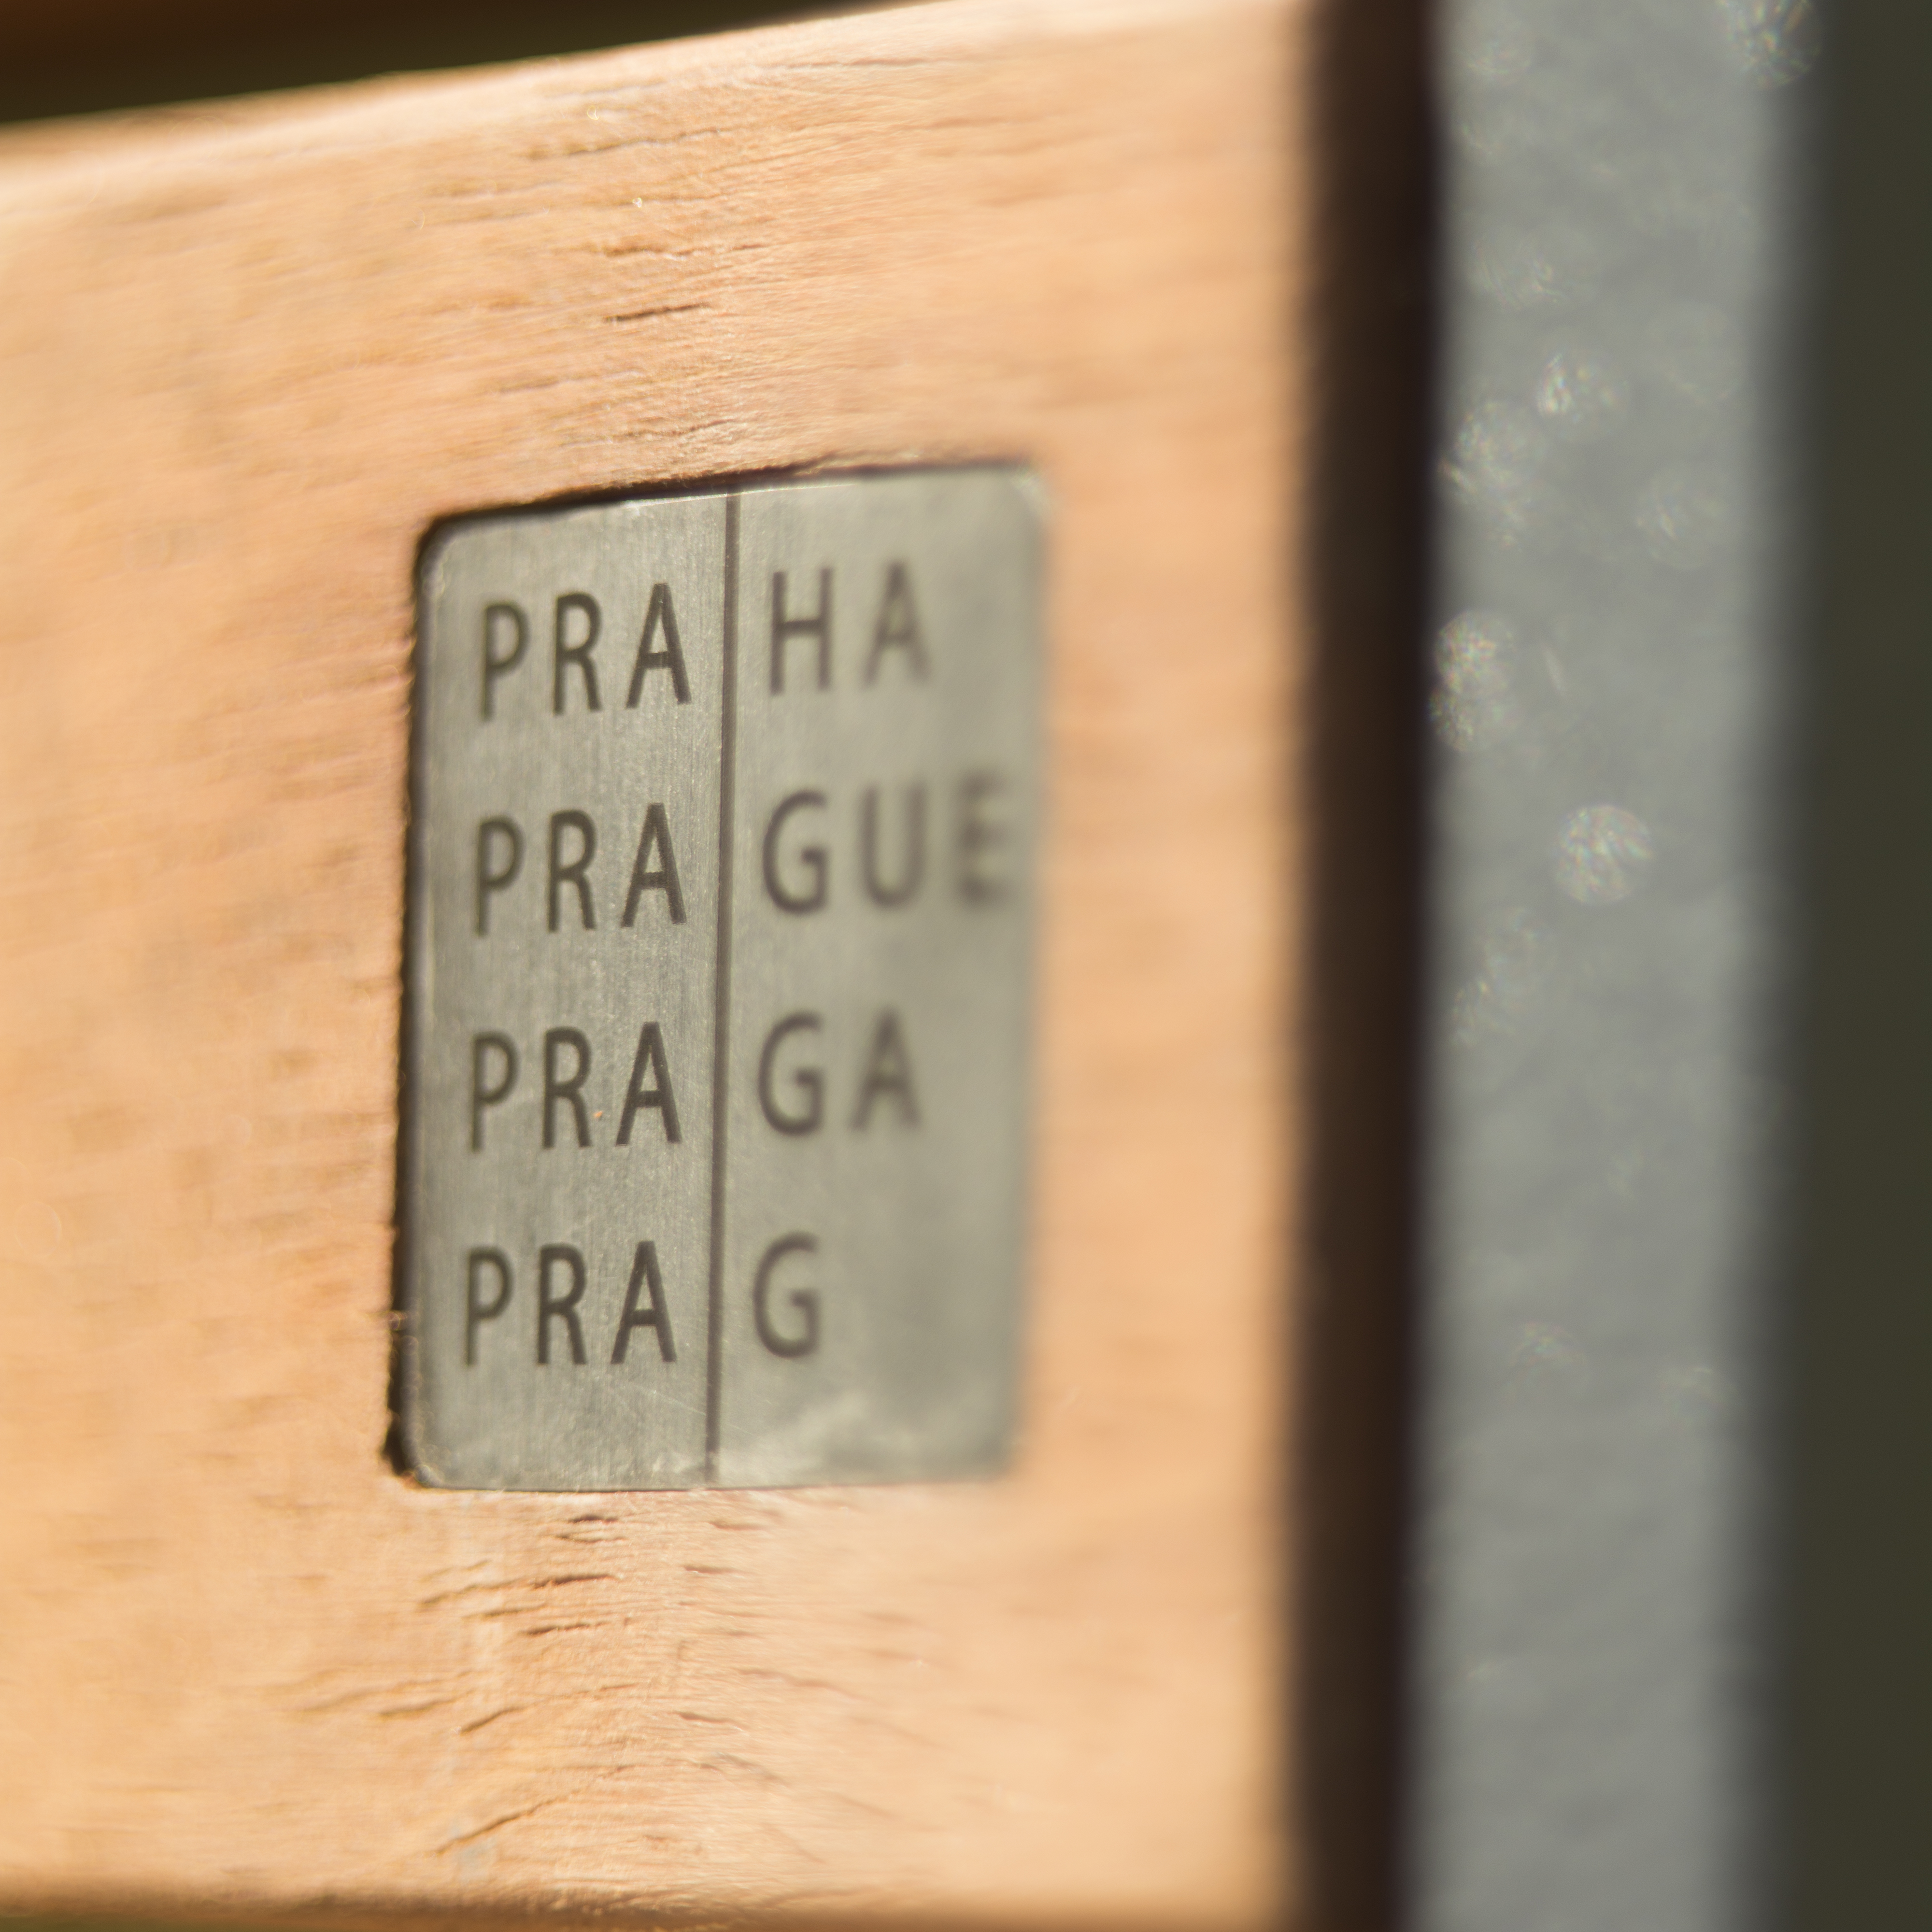 Po letních prázdninách je již známa nová podoba laviček pro Prahu